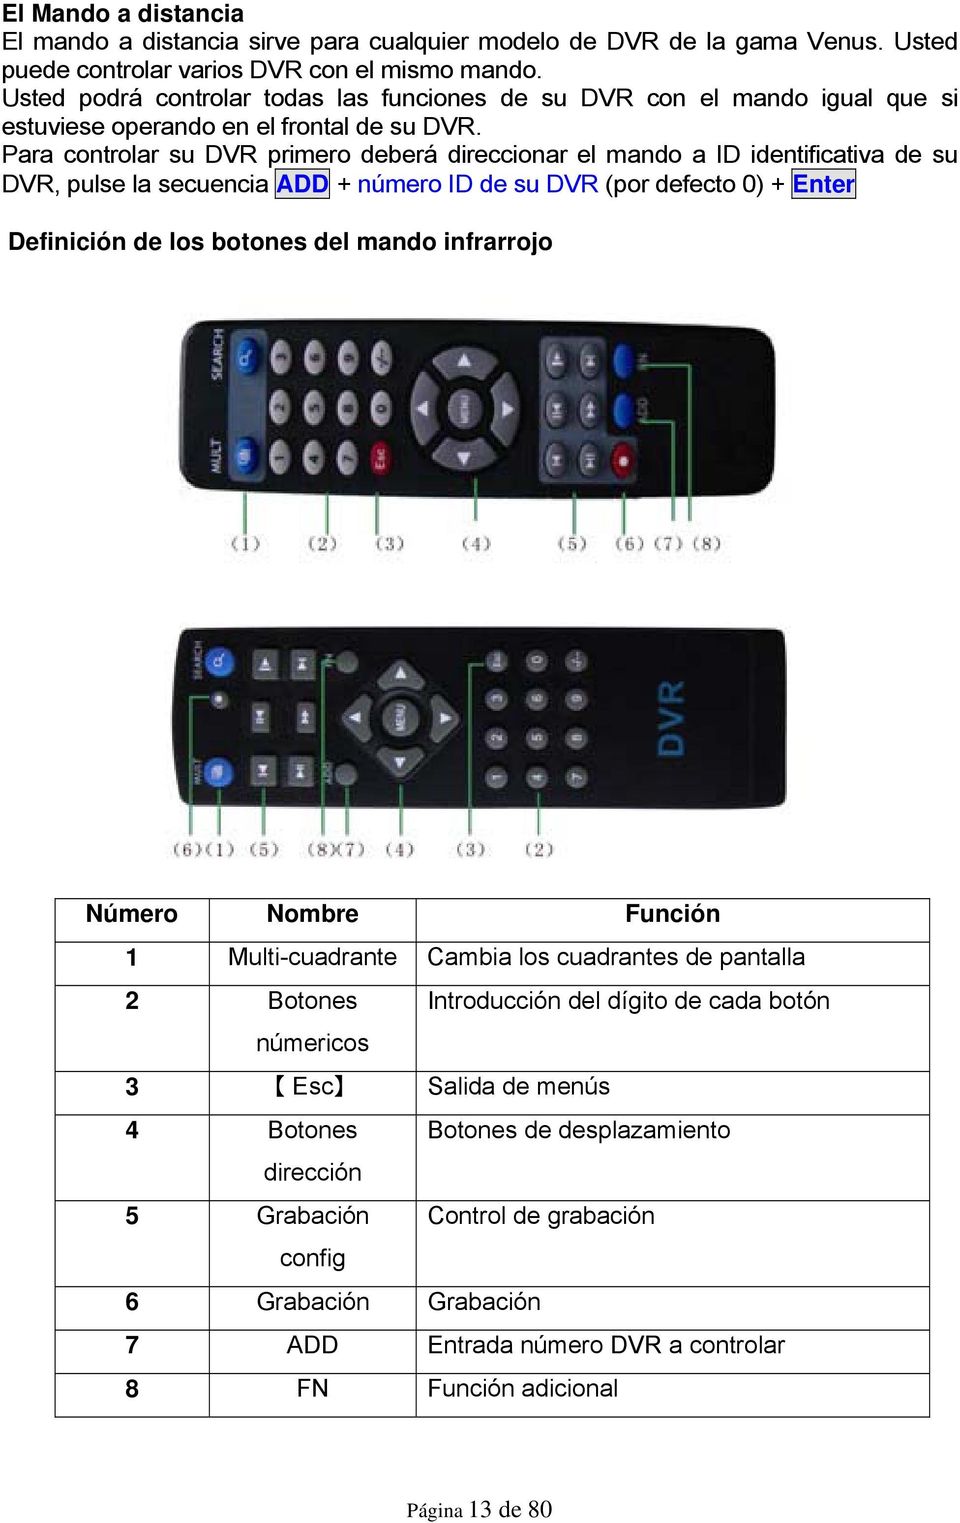 Para controlar su DVR primero deberá direccionar el mando a ID identificativa de su DVR, pulse la secuencia ADD + número ID de su DVR (por defecto 0) + Enter Definición de los botones del mando